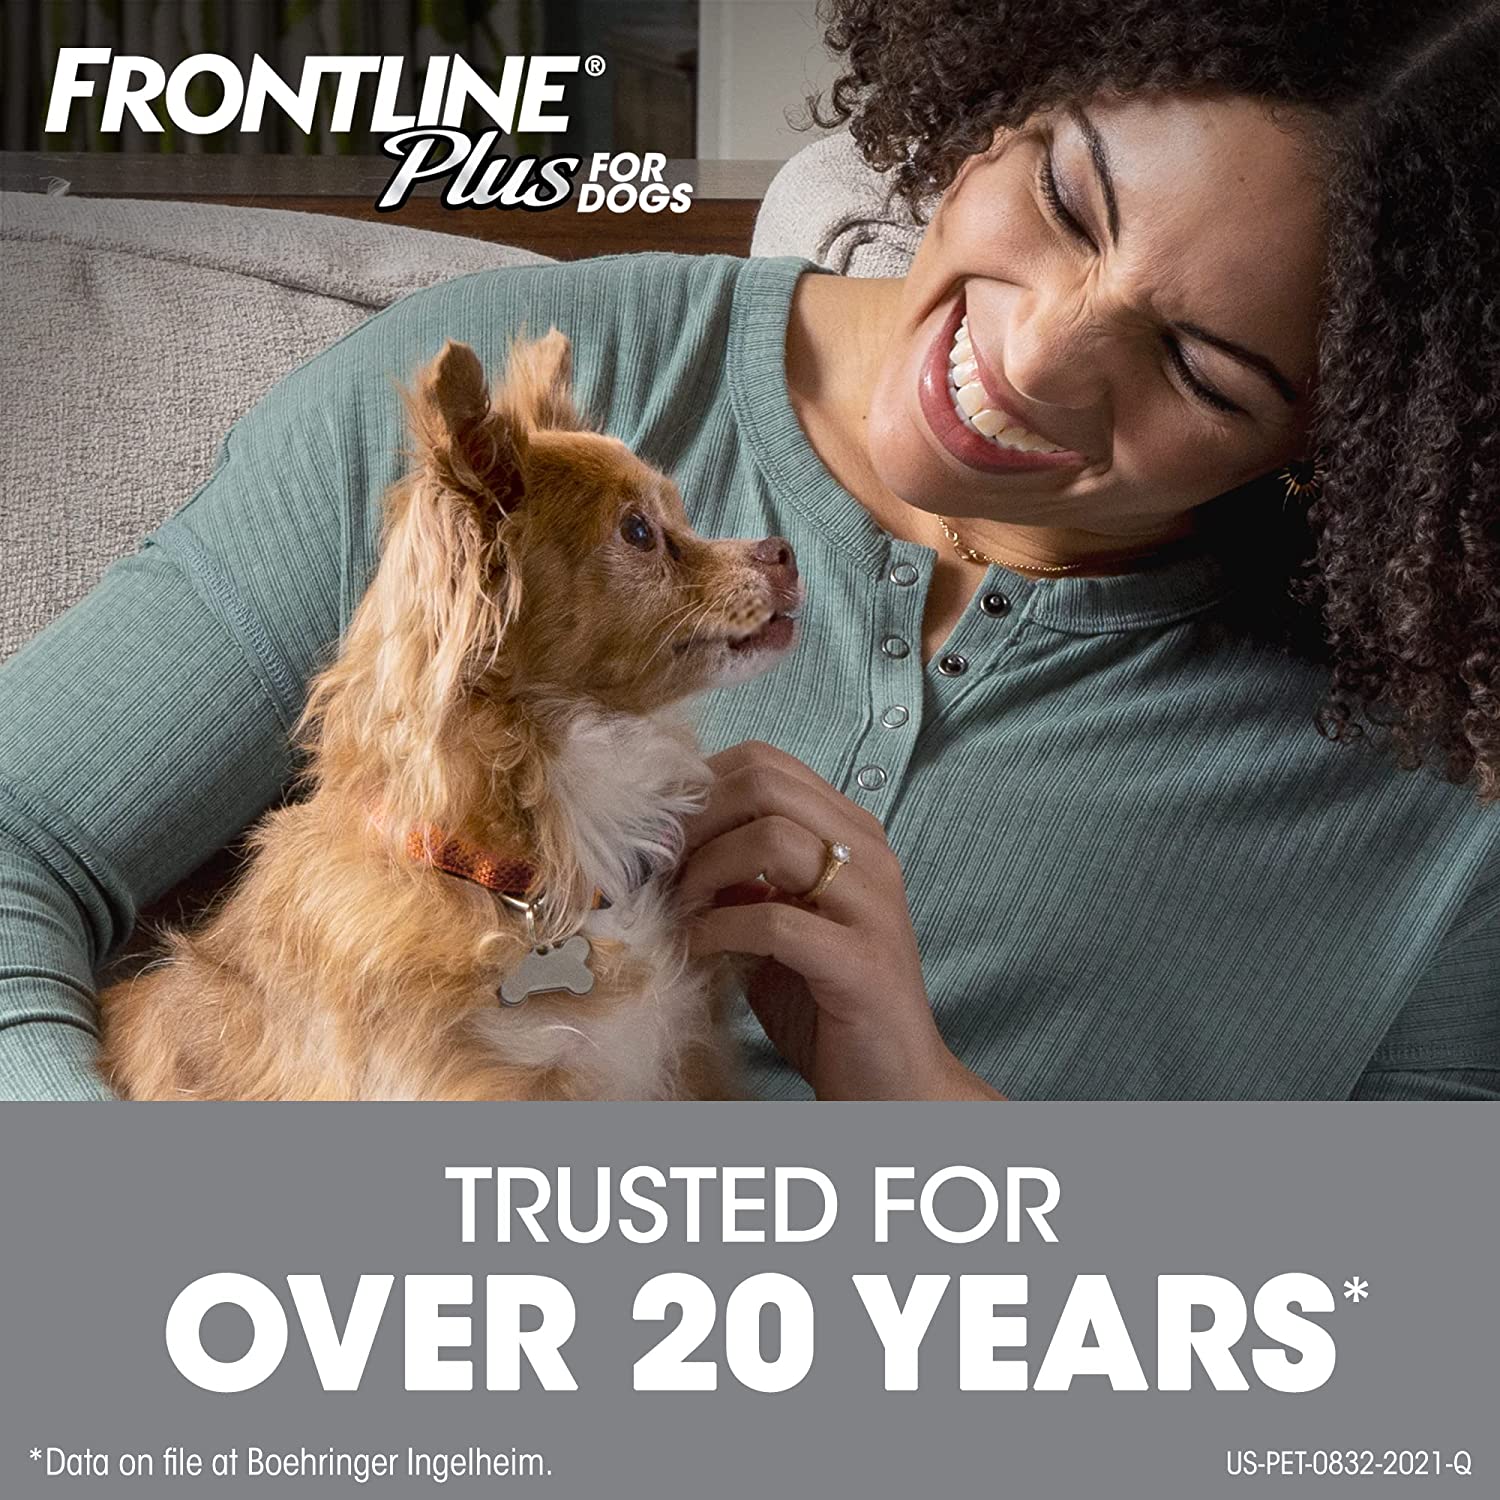 Frontline Plus Dogs 